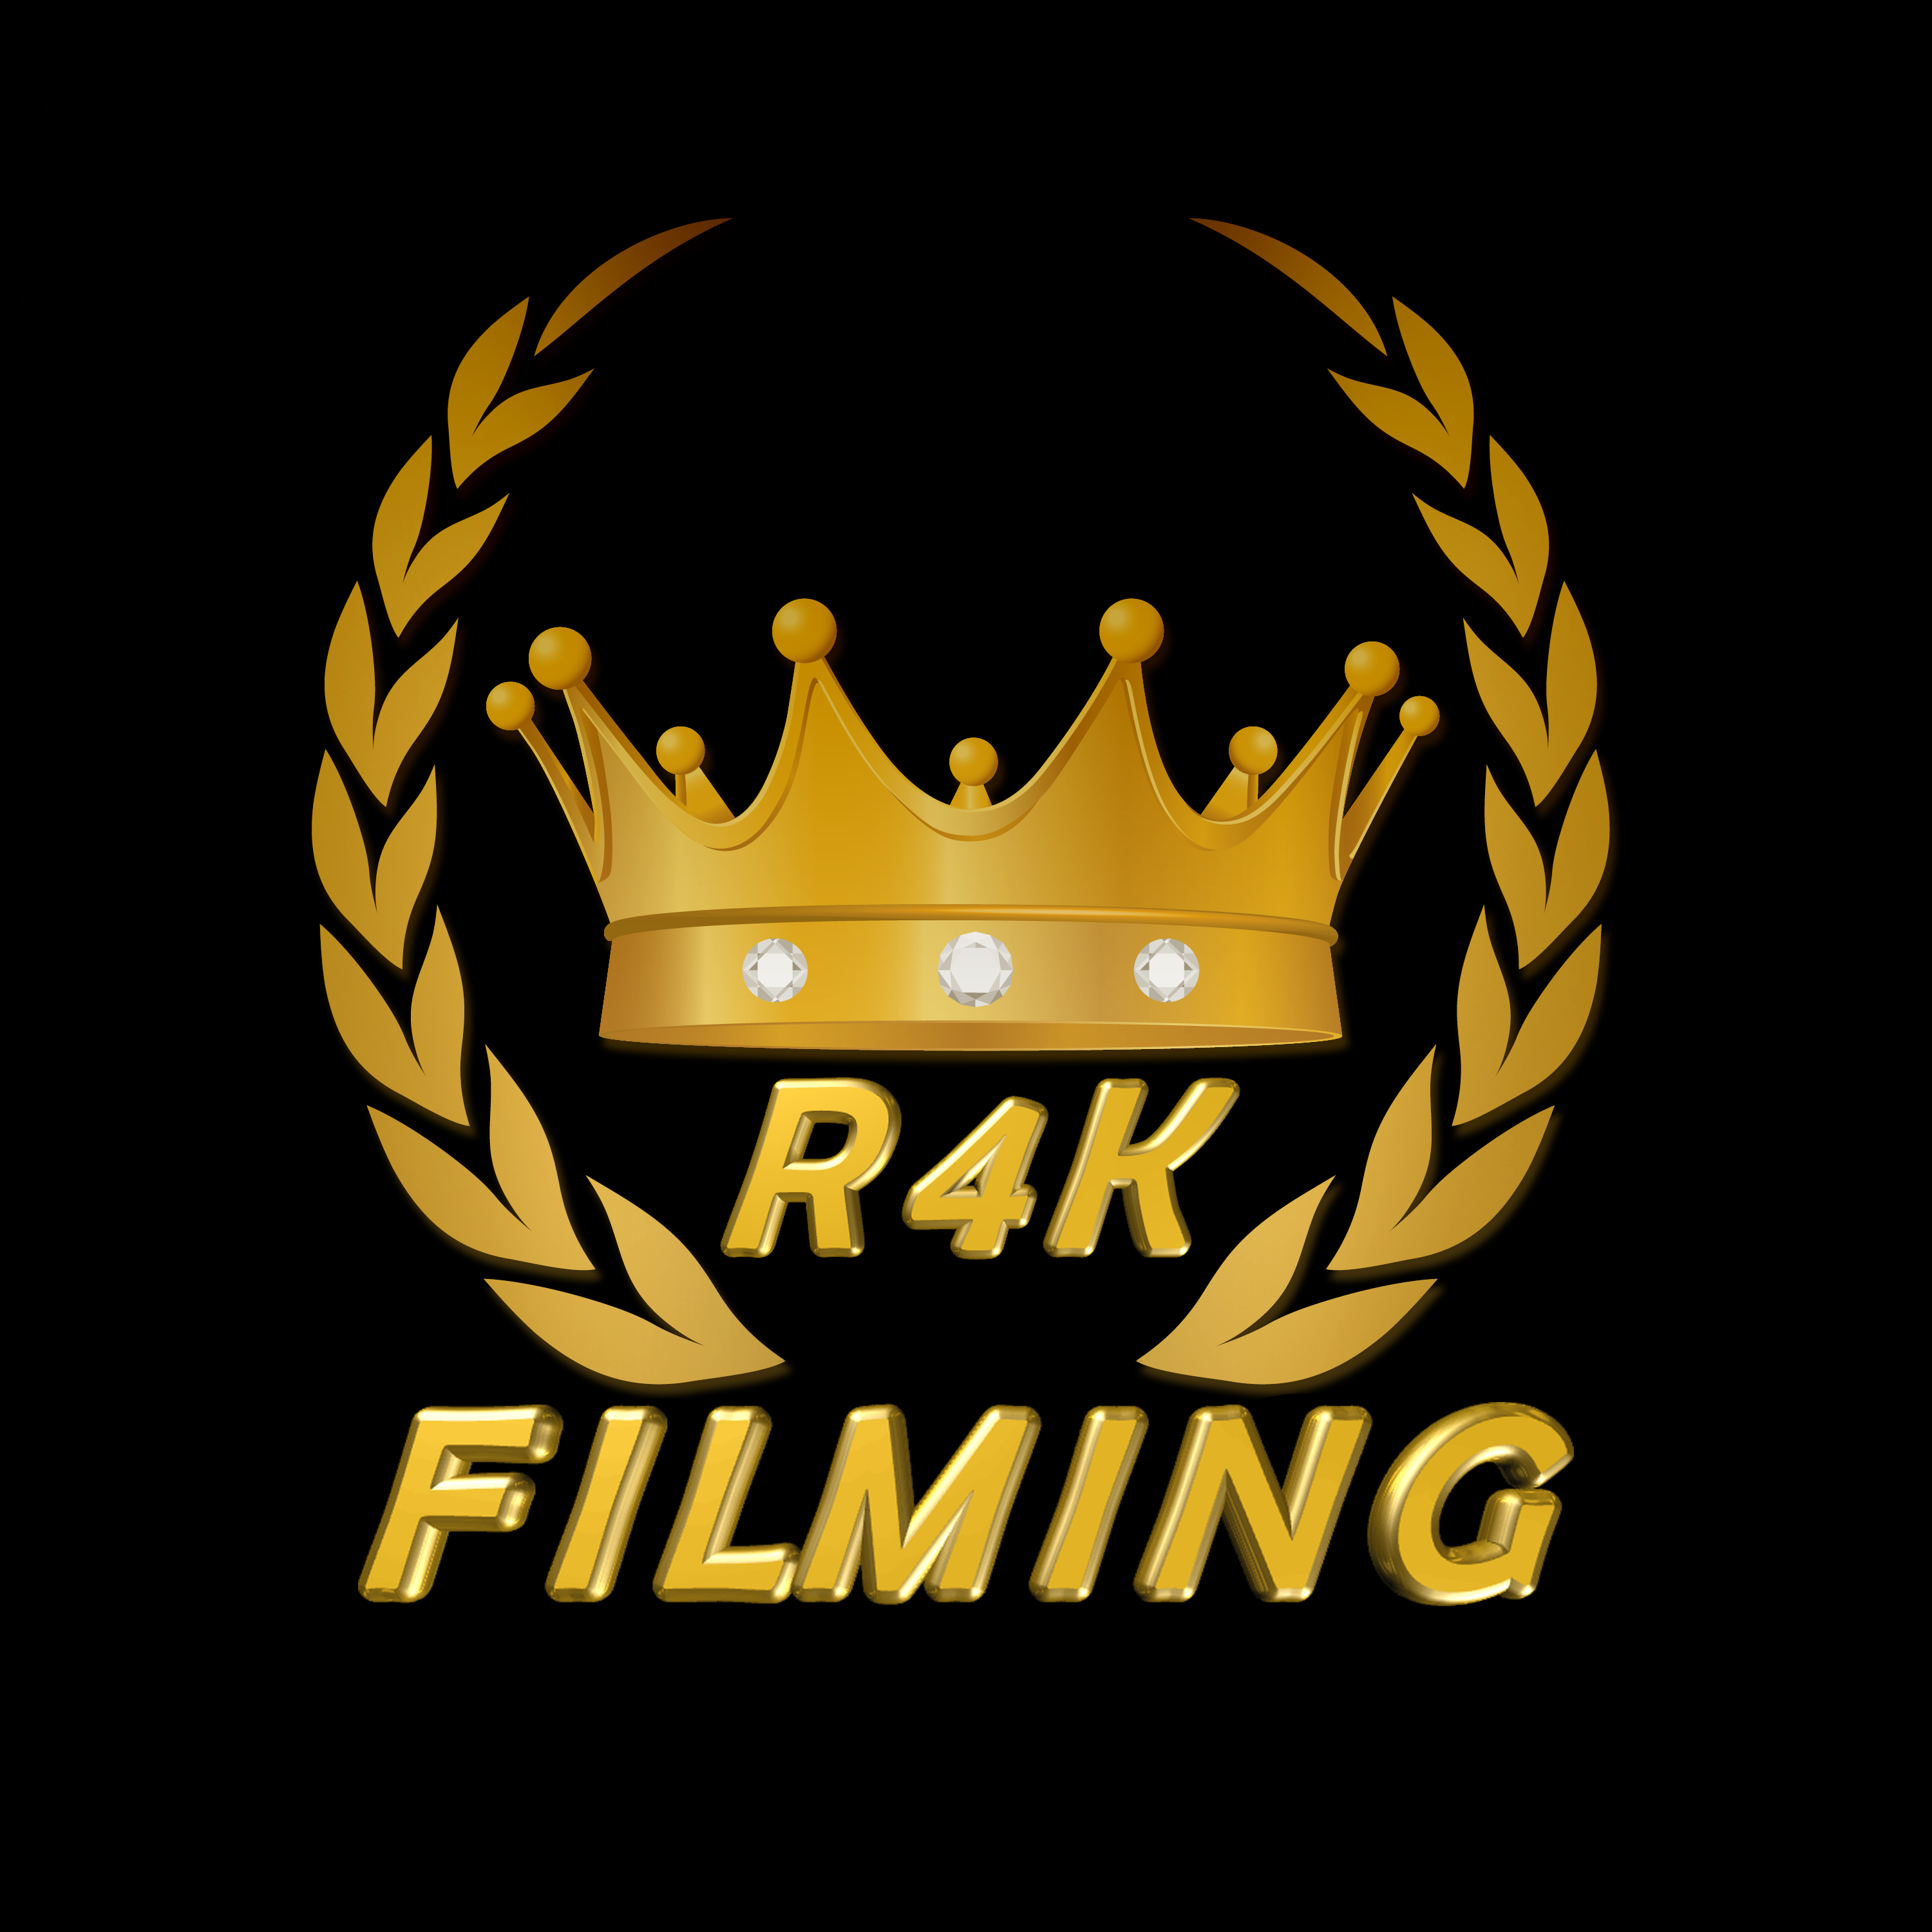 Royal 4k Filming logo